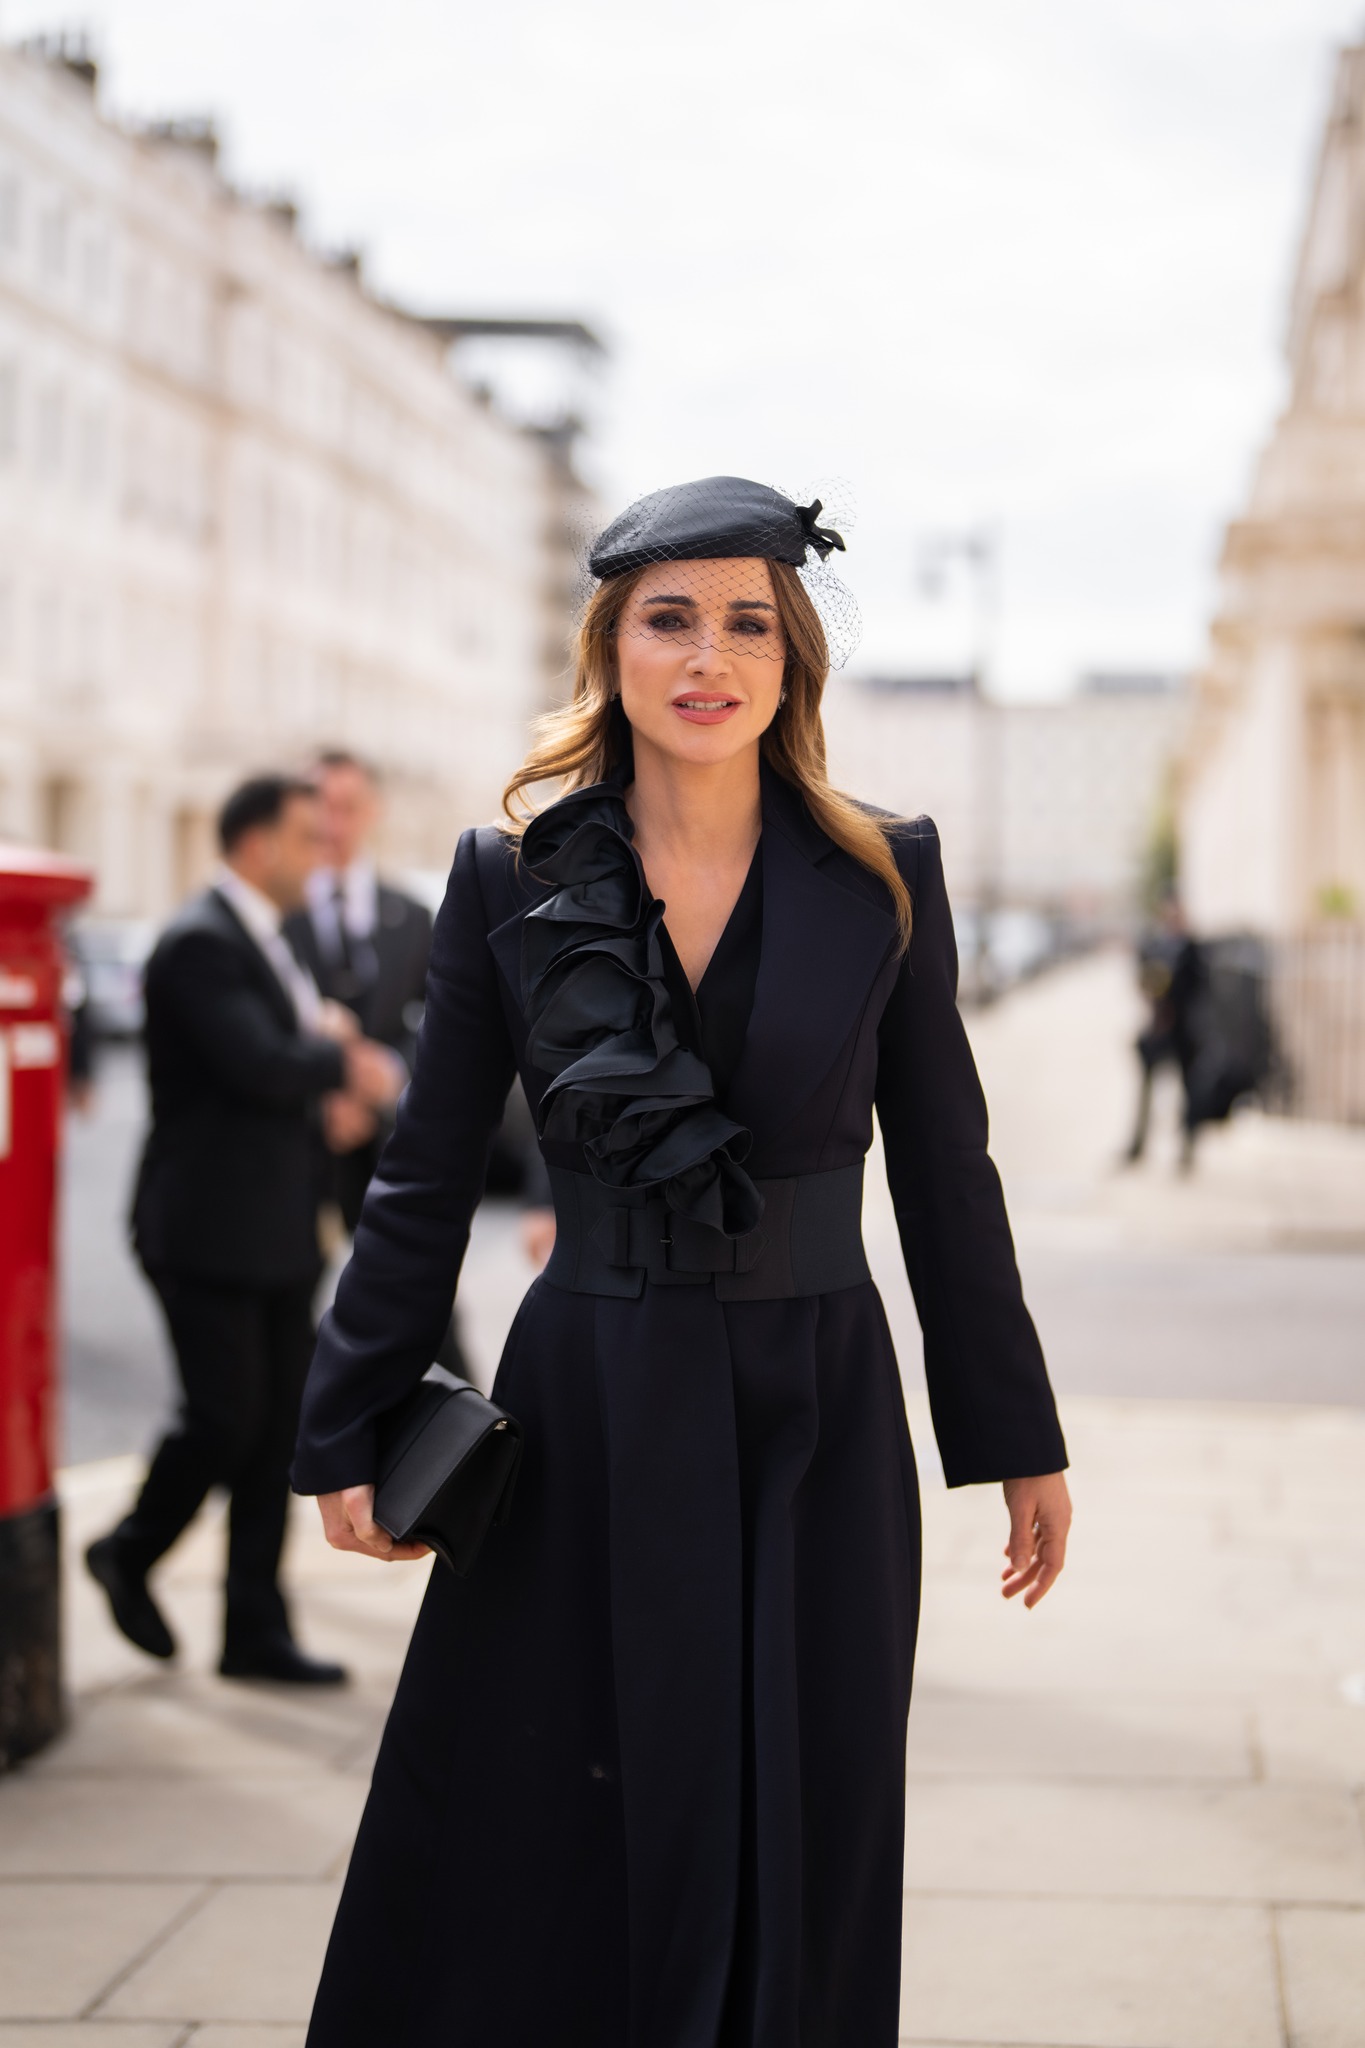 Queen Rania wore an old black coat from November 2001 Windsor visit to Queen Elizabeth II's funeral